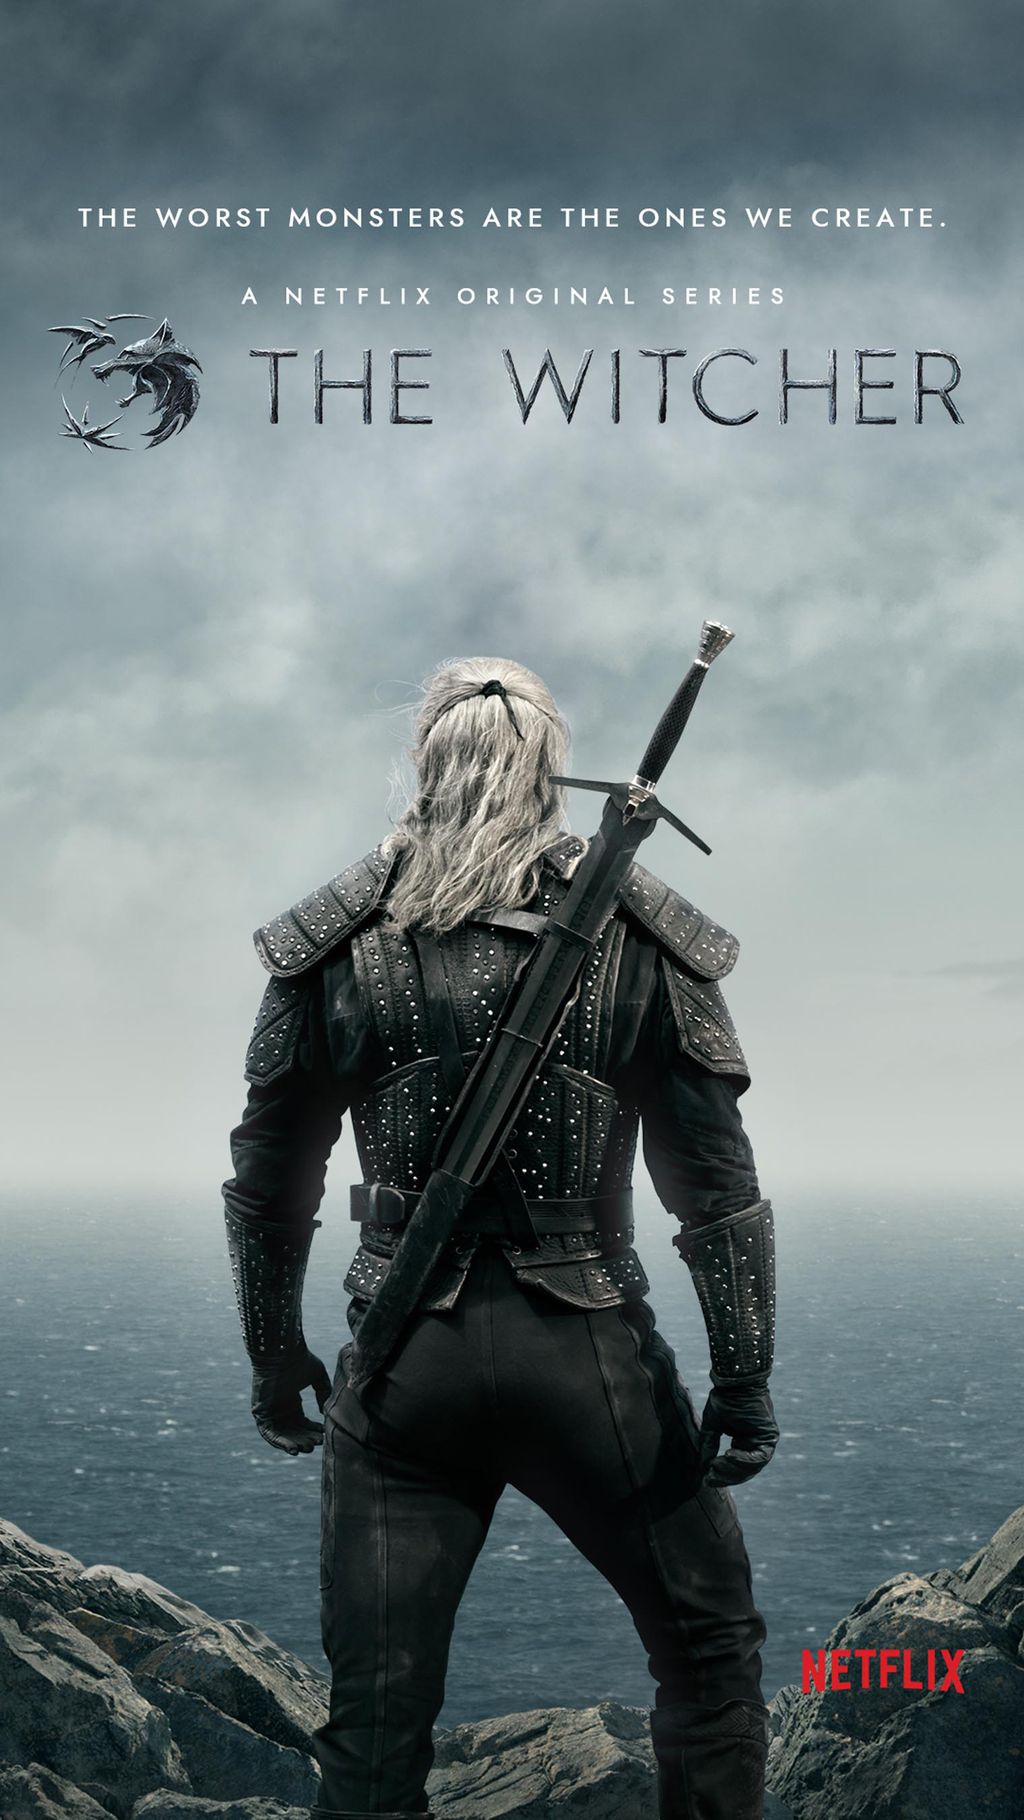 Primeiro pôster oficial da série The Witcher (Imagem: Netflix)